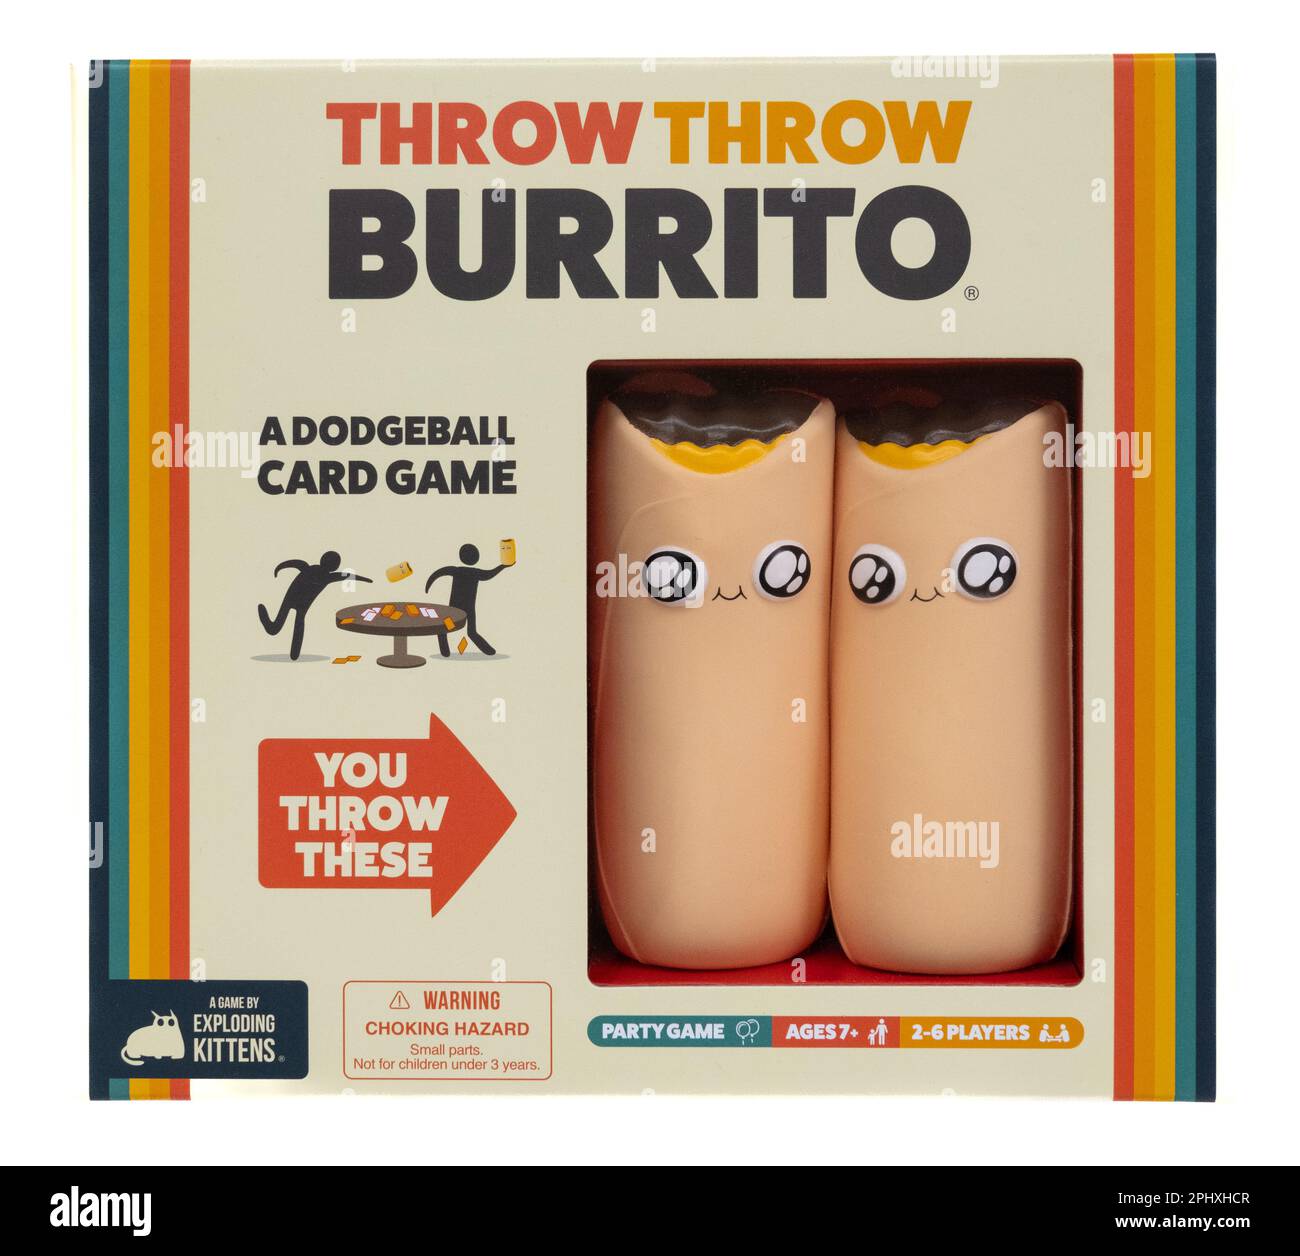 Throw Throw Burrito game Stock Photo